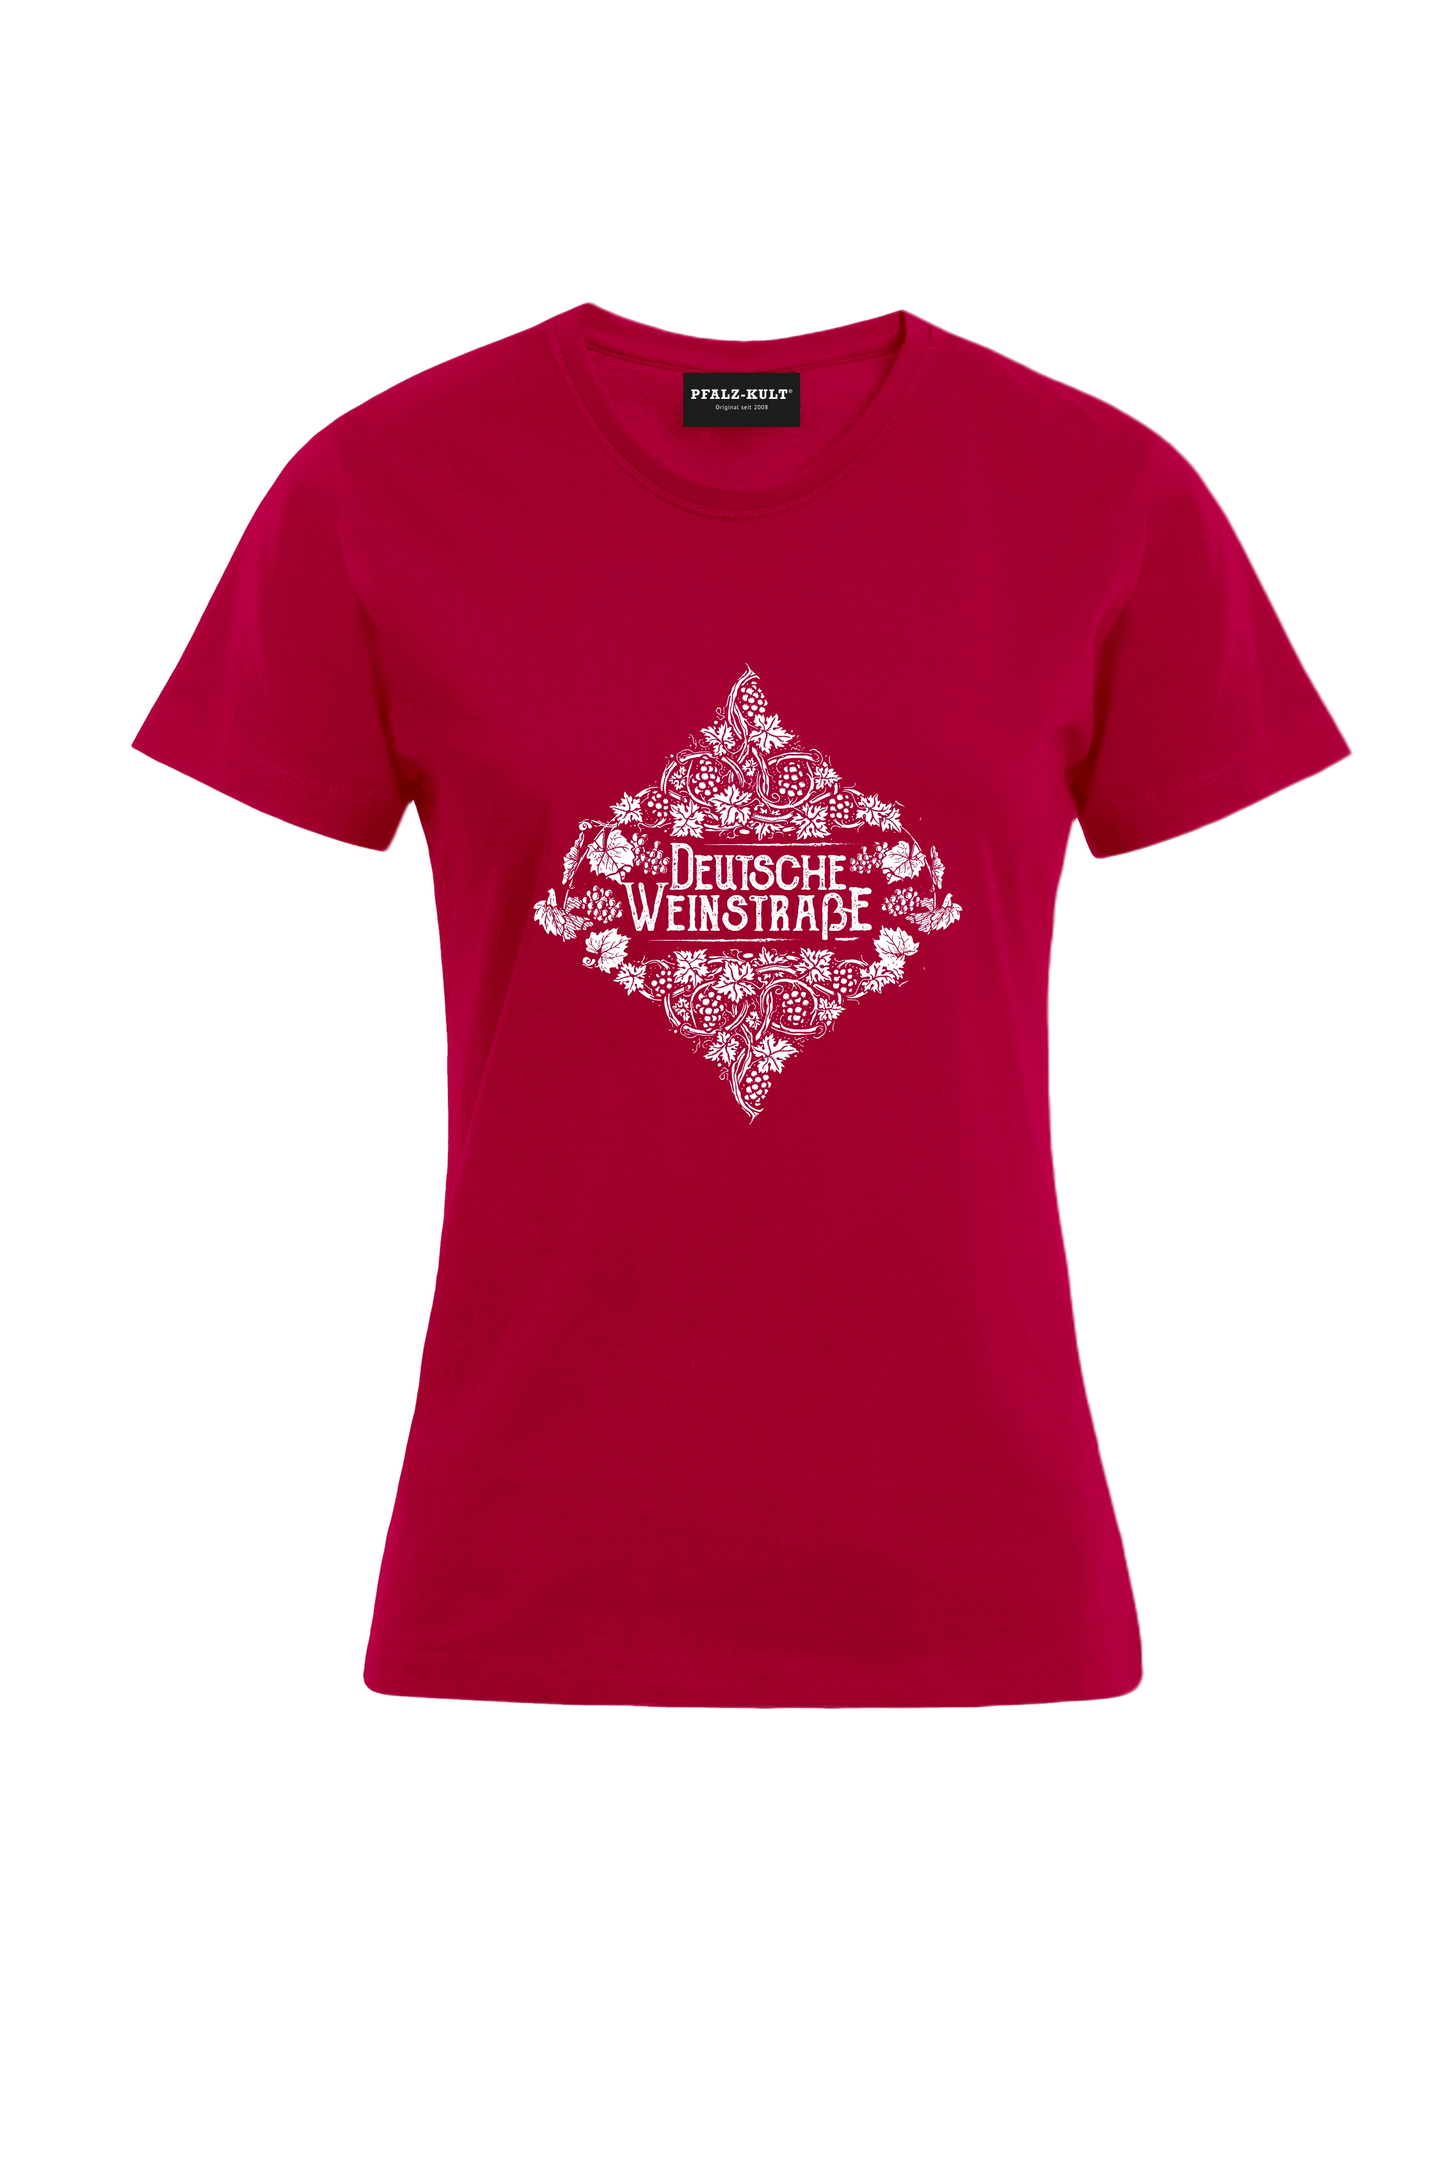 Rotes Pfalz-Kult Damen Shirt mit dem Aufdruck "Deutsche Weinstrasse" .  Das ideale Geschenk für jedes Pfalzkind vom Textildruck Spezialisten aus Bad Dürkheim.